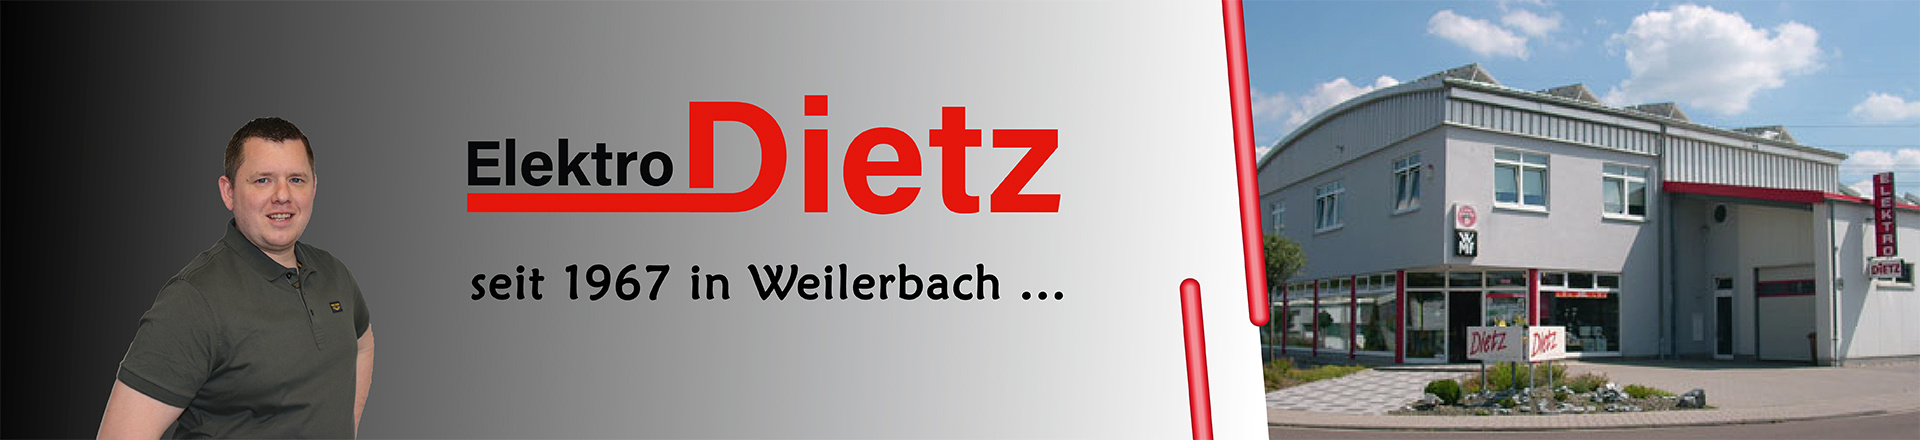 Elektro Dietz GmbH in Weilerbach